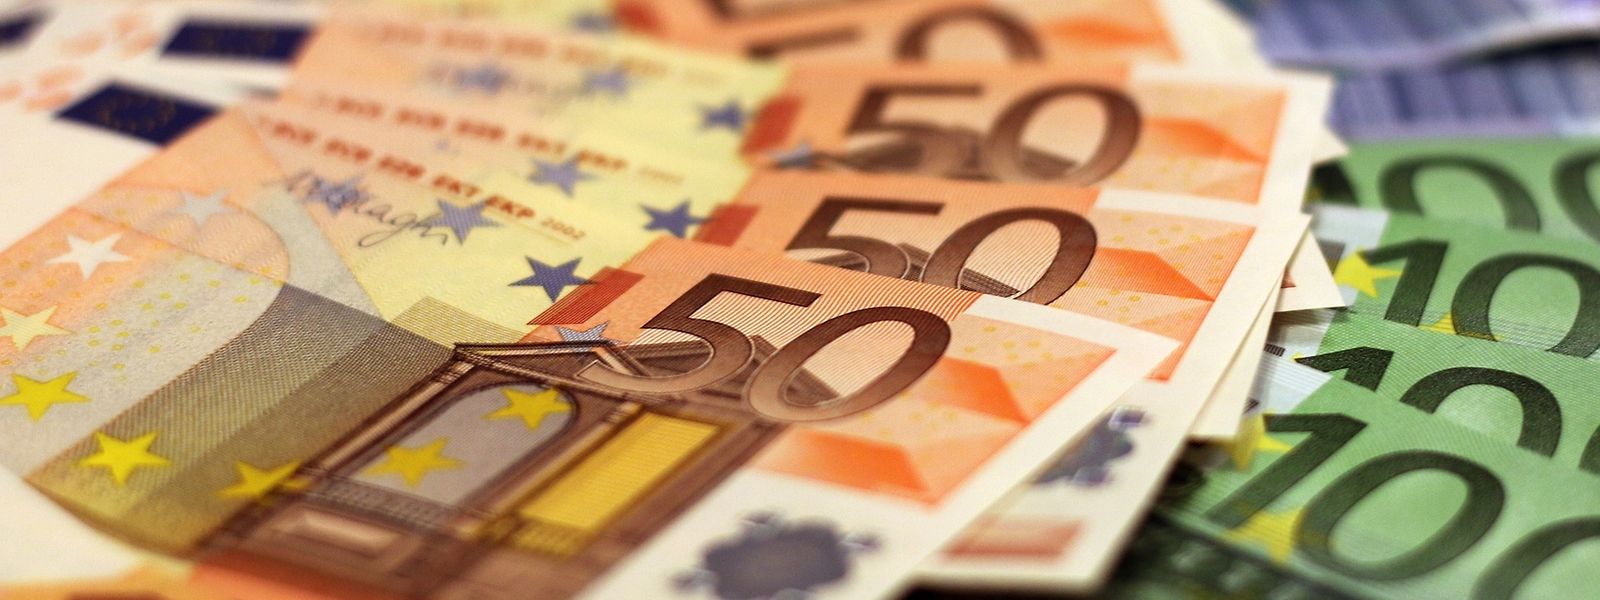 Dentro da mala que Victor encontrou estavam 11 mil euros, em notas de 50 euros, divididos por envelopes. 